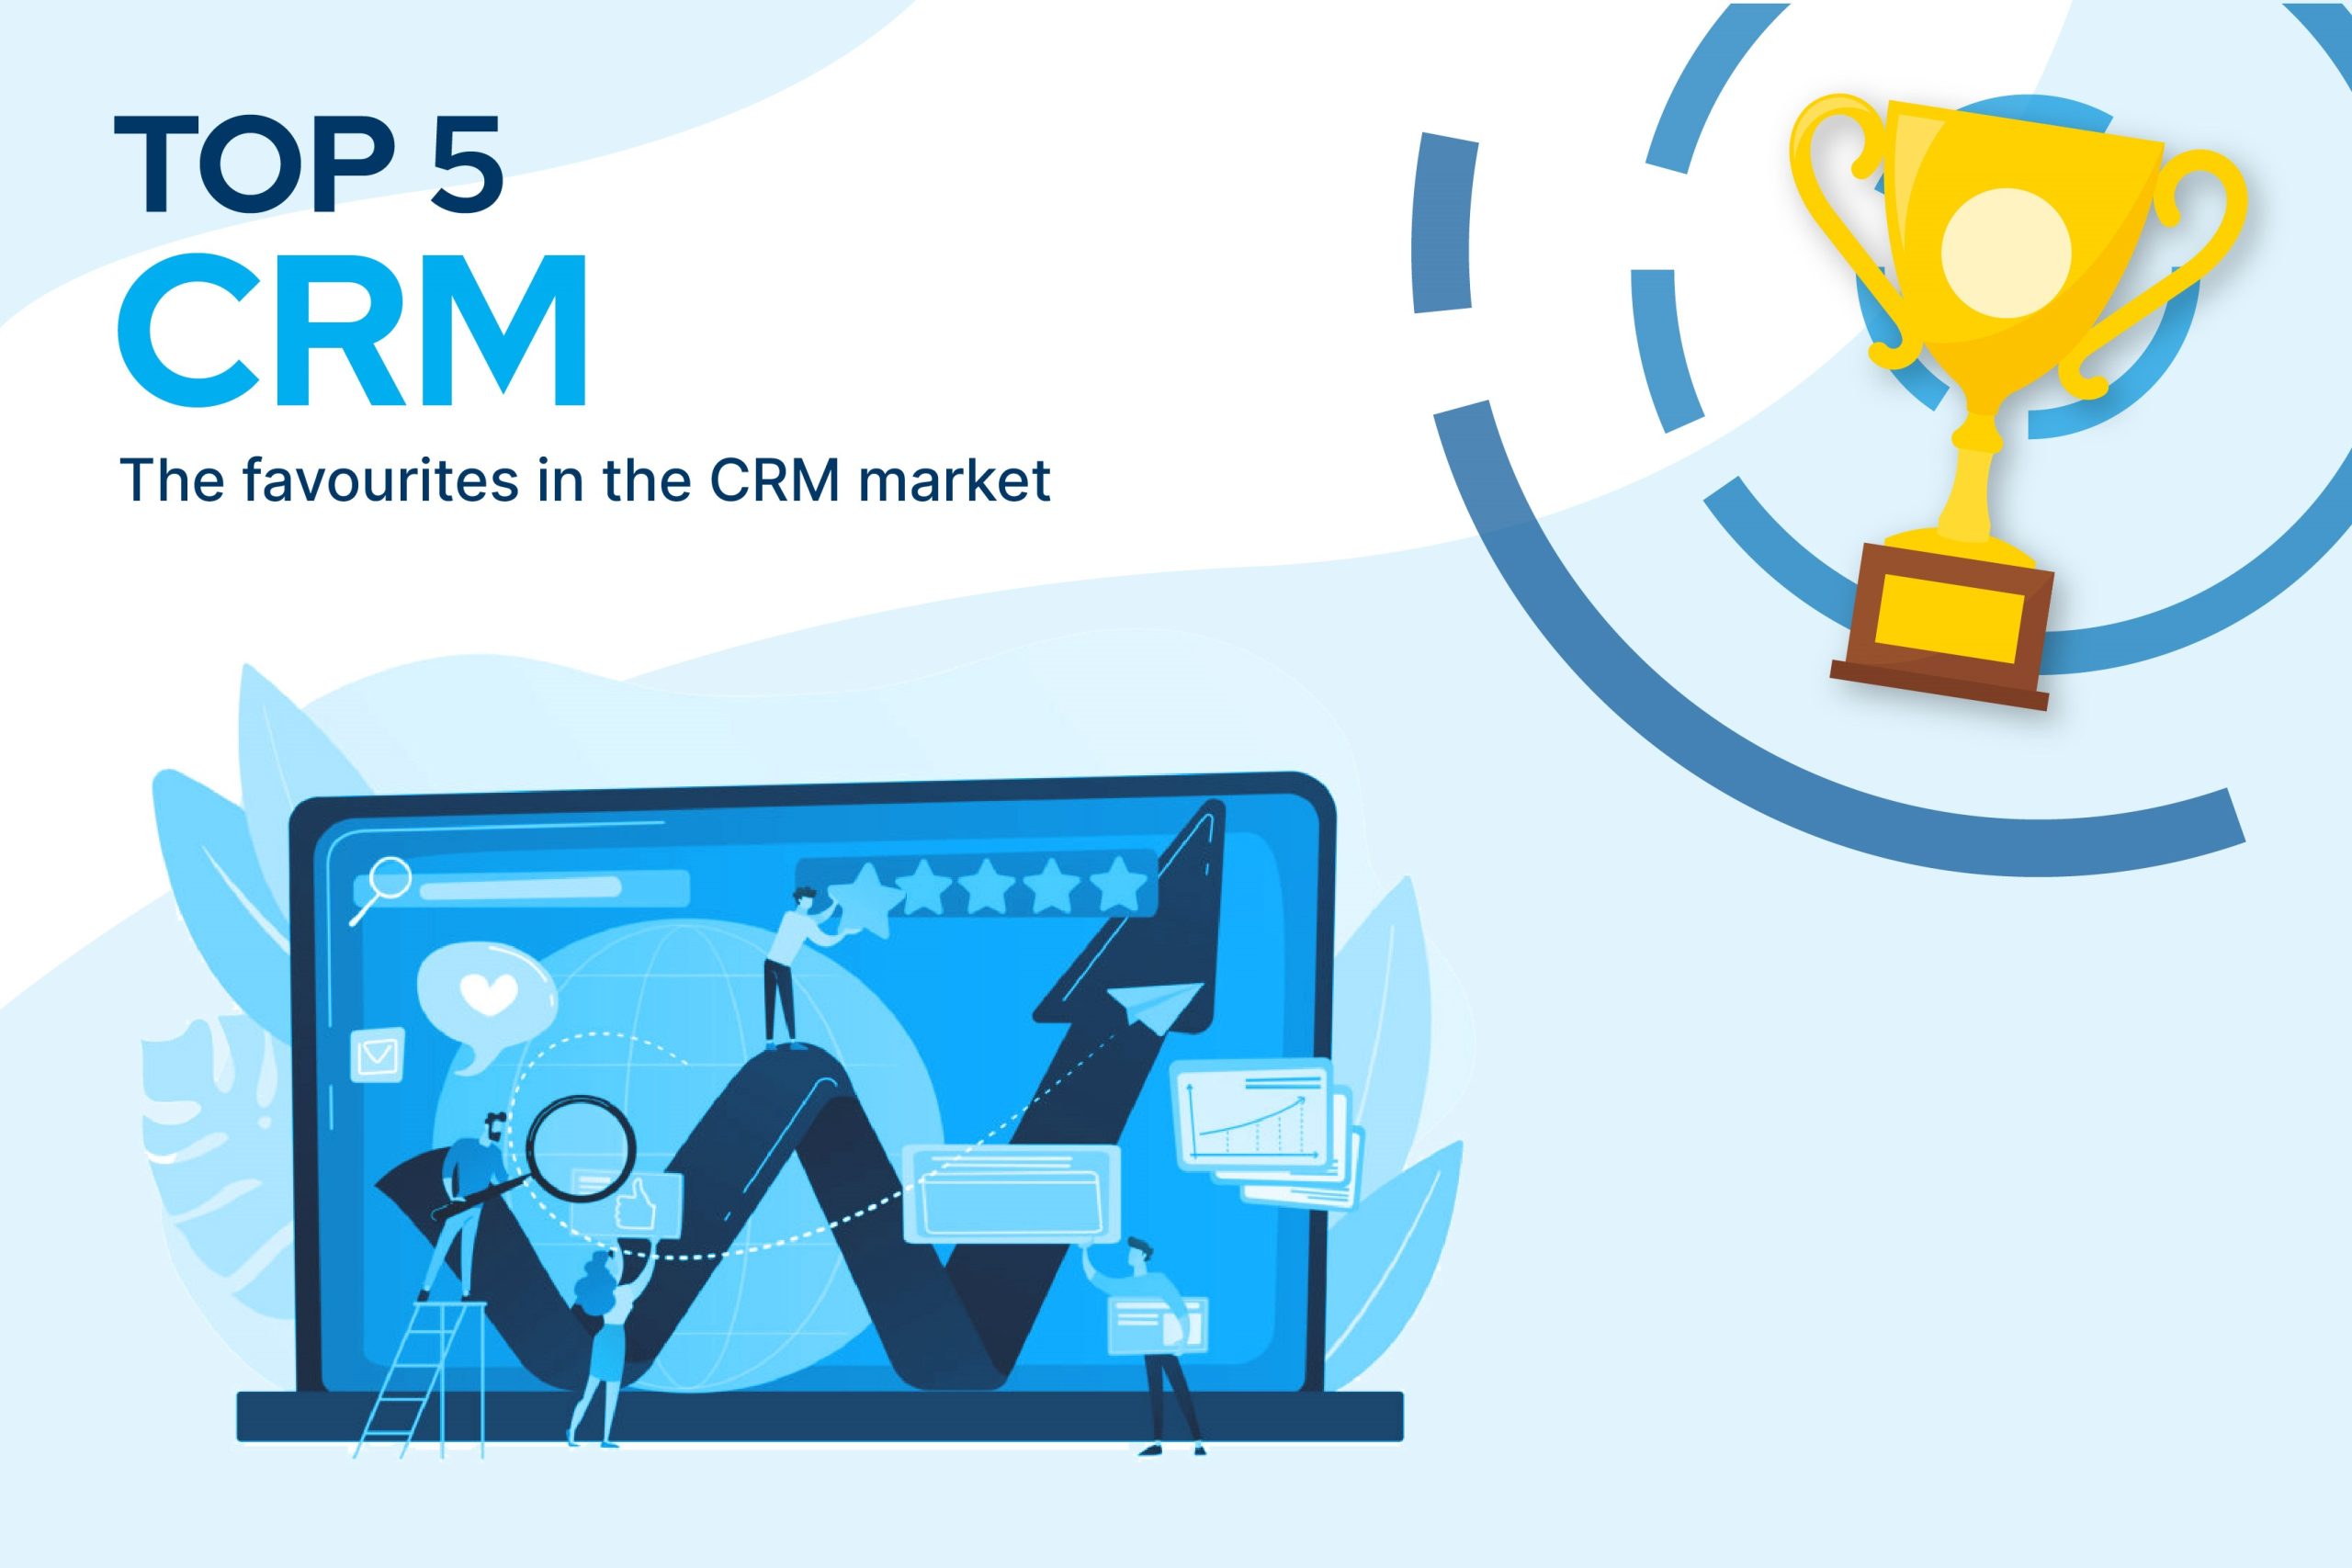 Porównanie najlepszych systemów CRM dostępnych na rynku